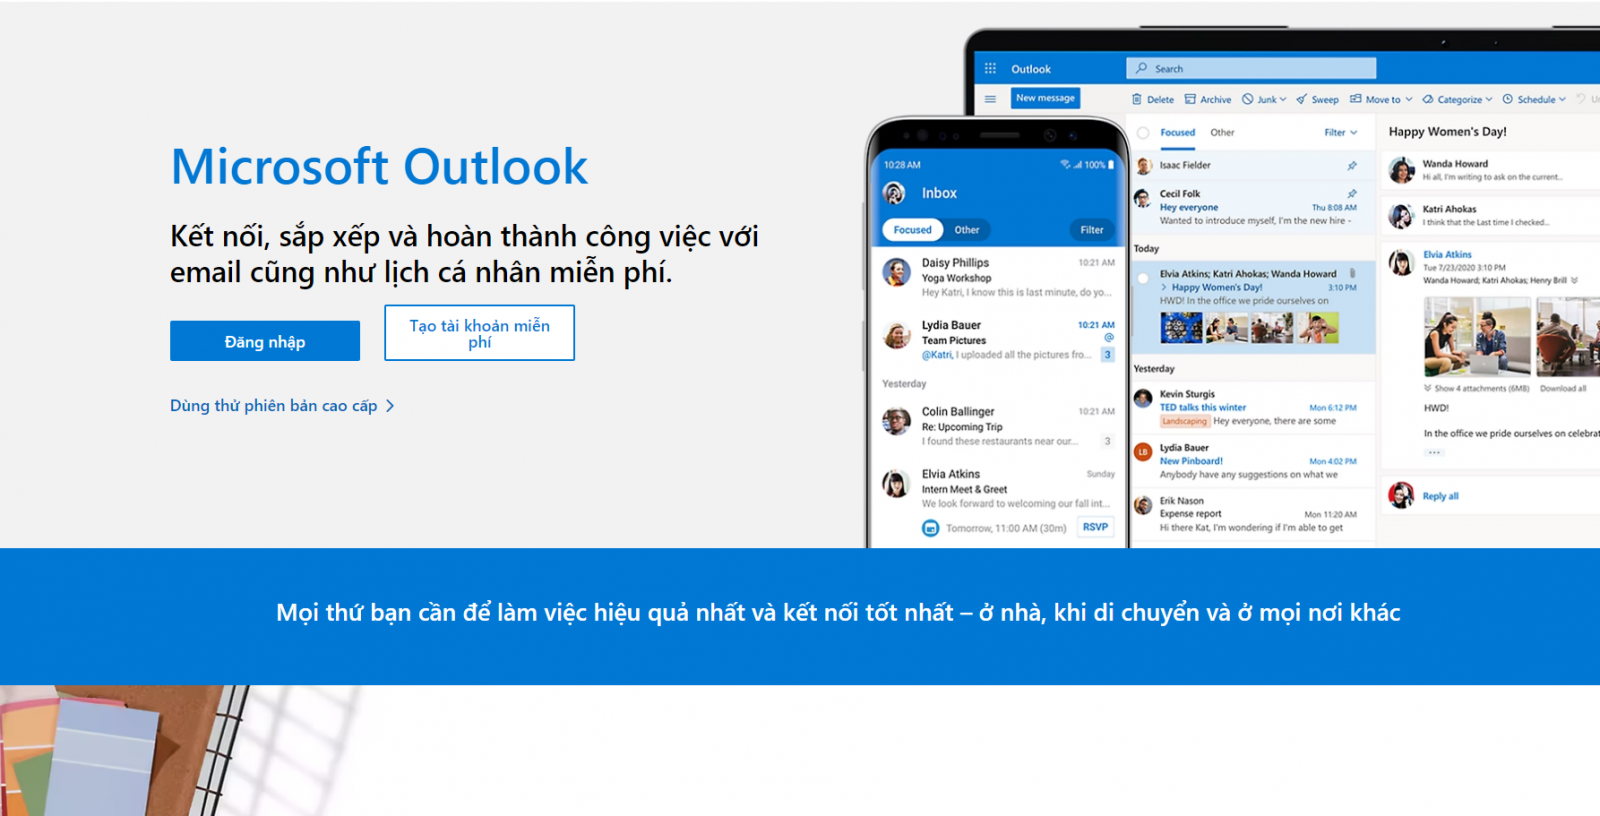 Chọn Tạo tài khoản miễn phí để bắt đầu đăng ký Outlook.